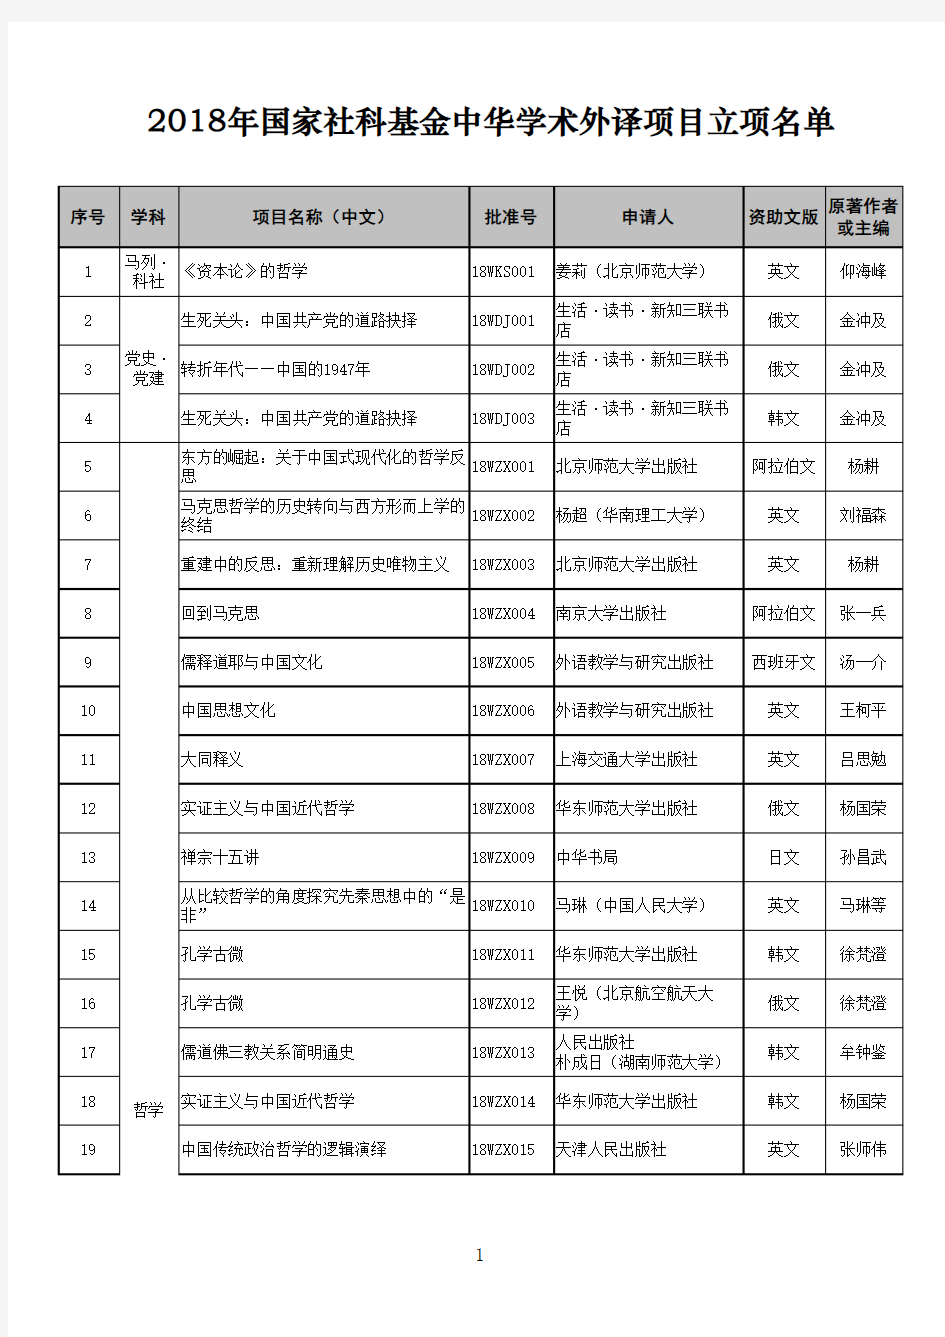 2018年国家社科基金中华学术外译项目立项名单